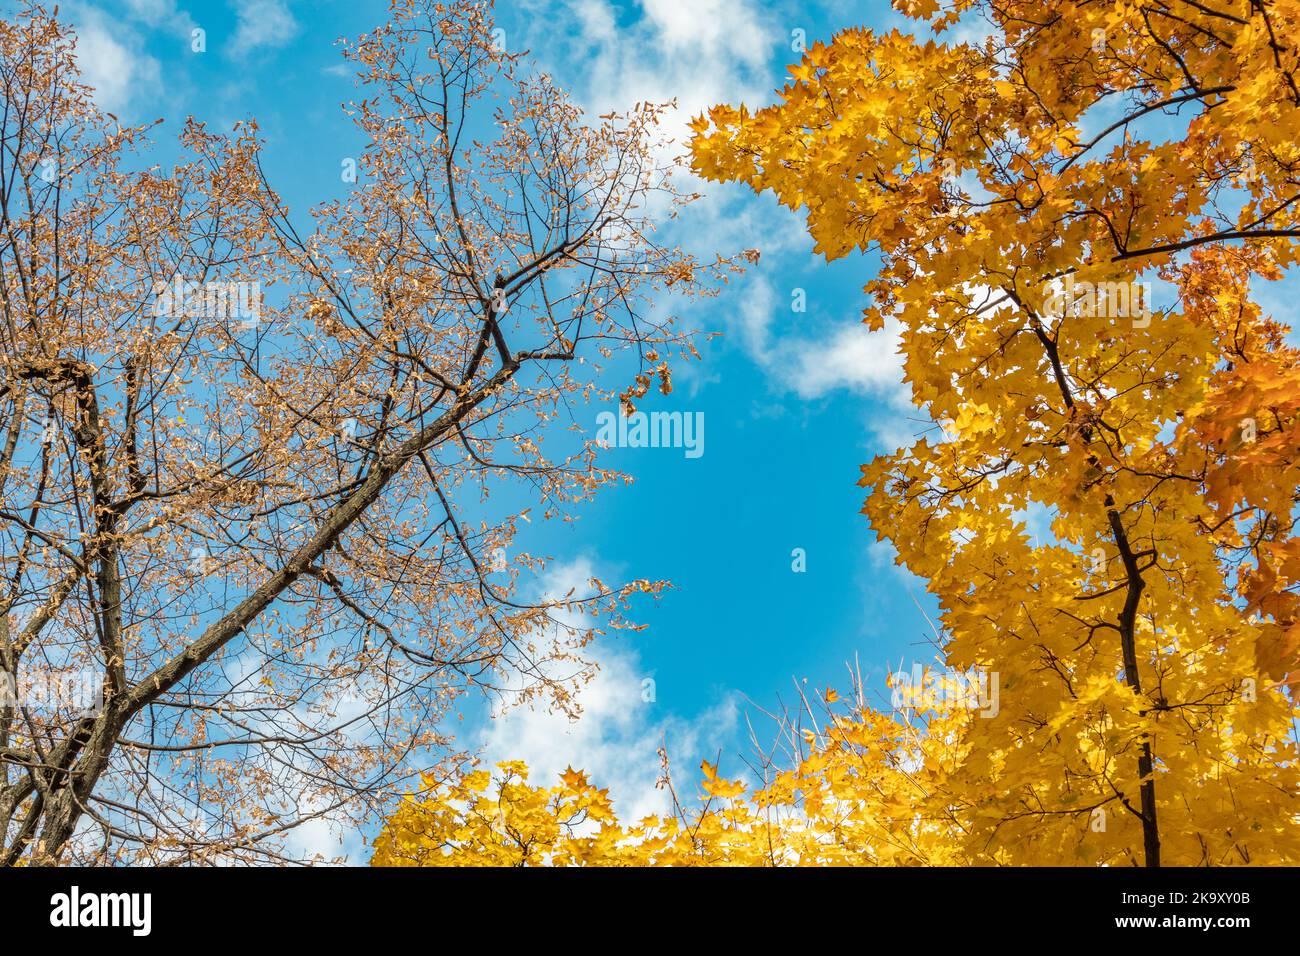 Temporada dorada de otoño mira hacia arriba. Ramas de árboles con hojas amarillas en el cielo azul con nubes, fondo natural otoñal del bosque Foto de stock